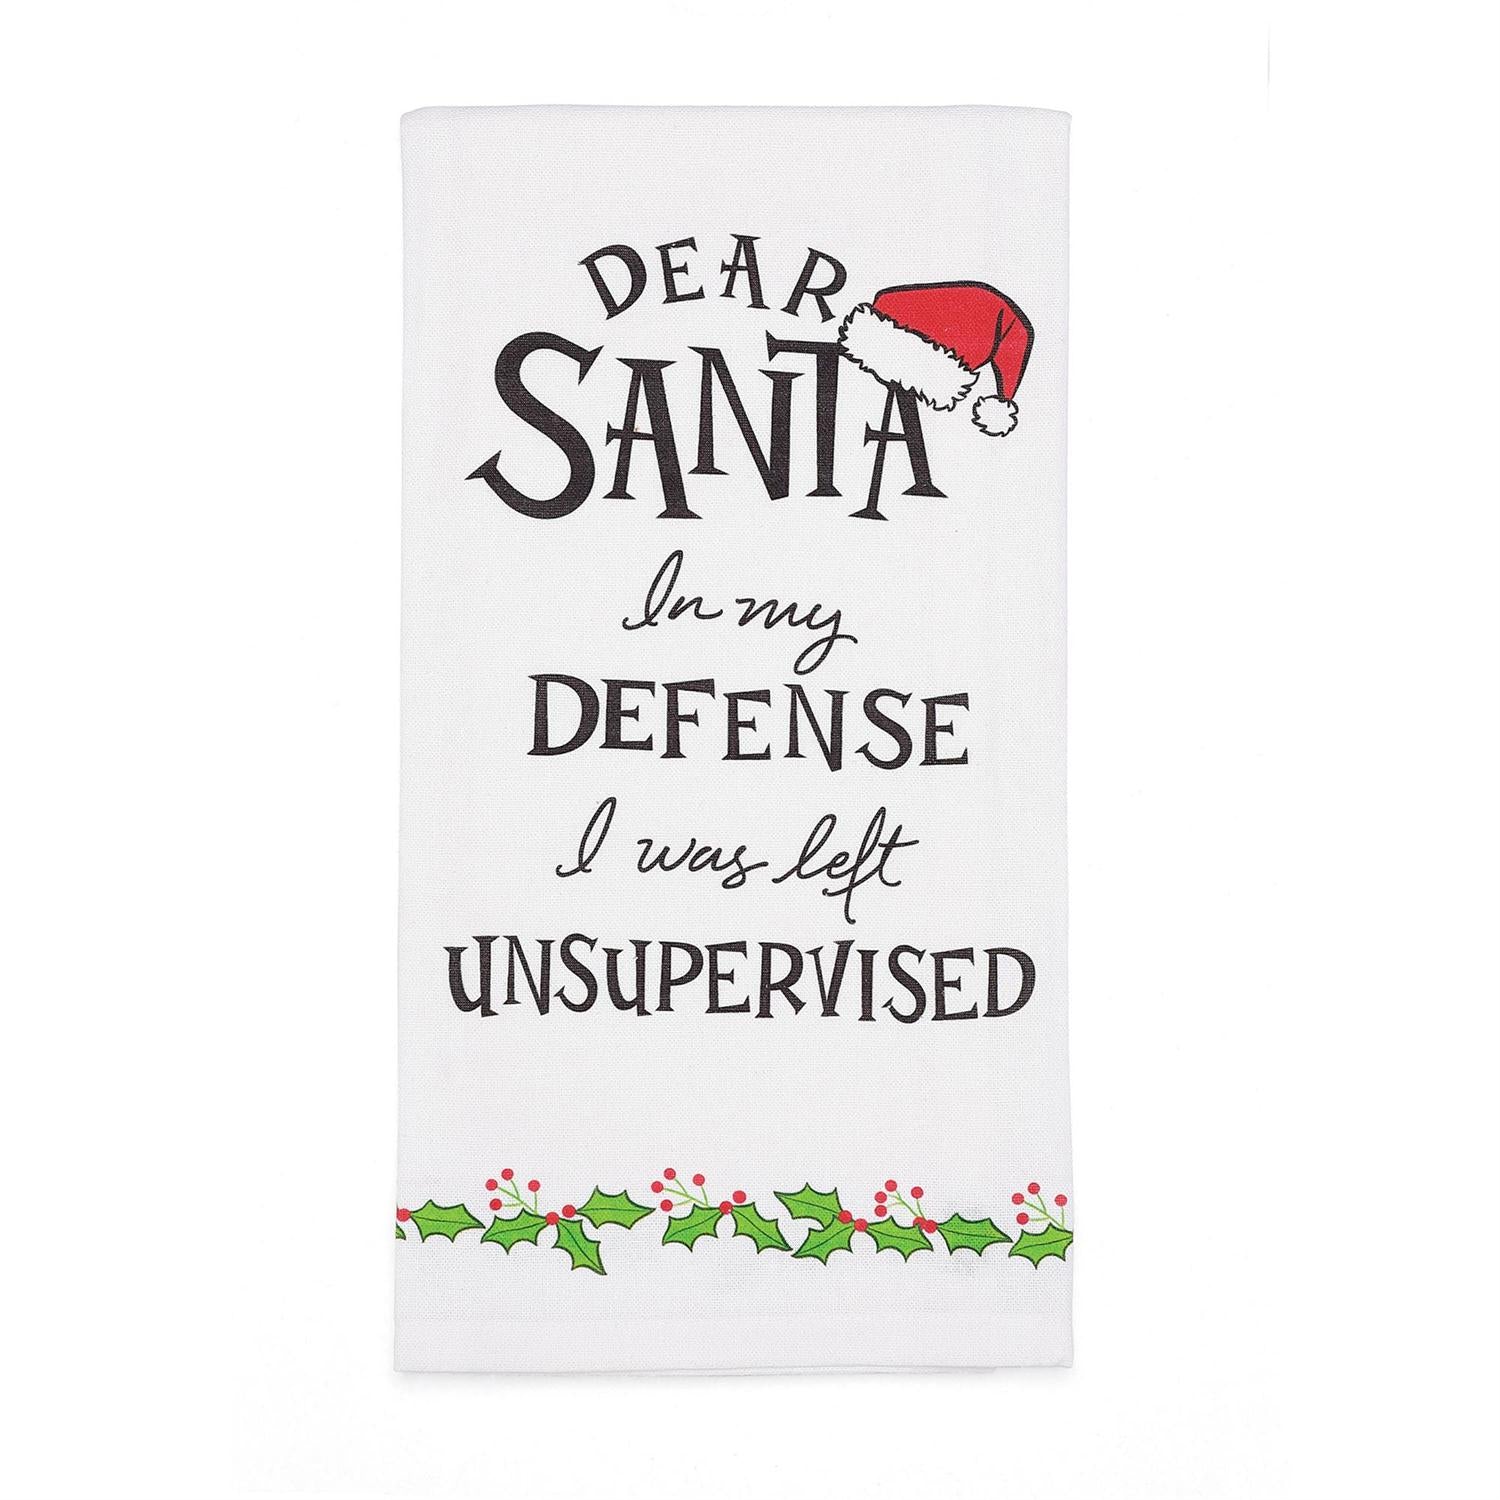 Dear Santa Defense Bar Towel